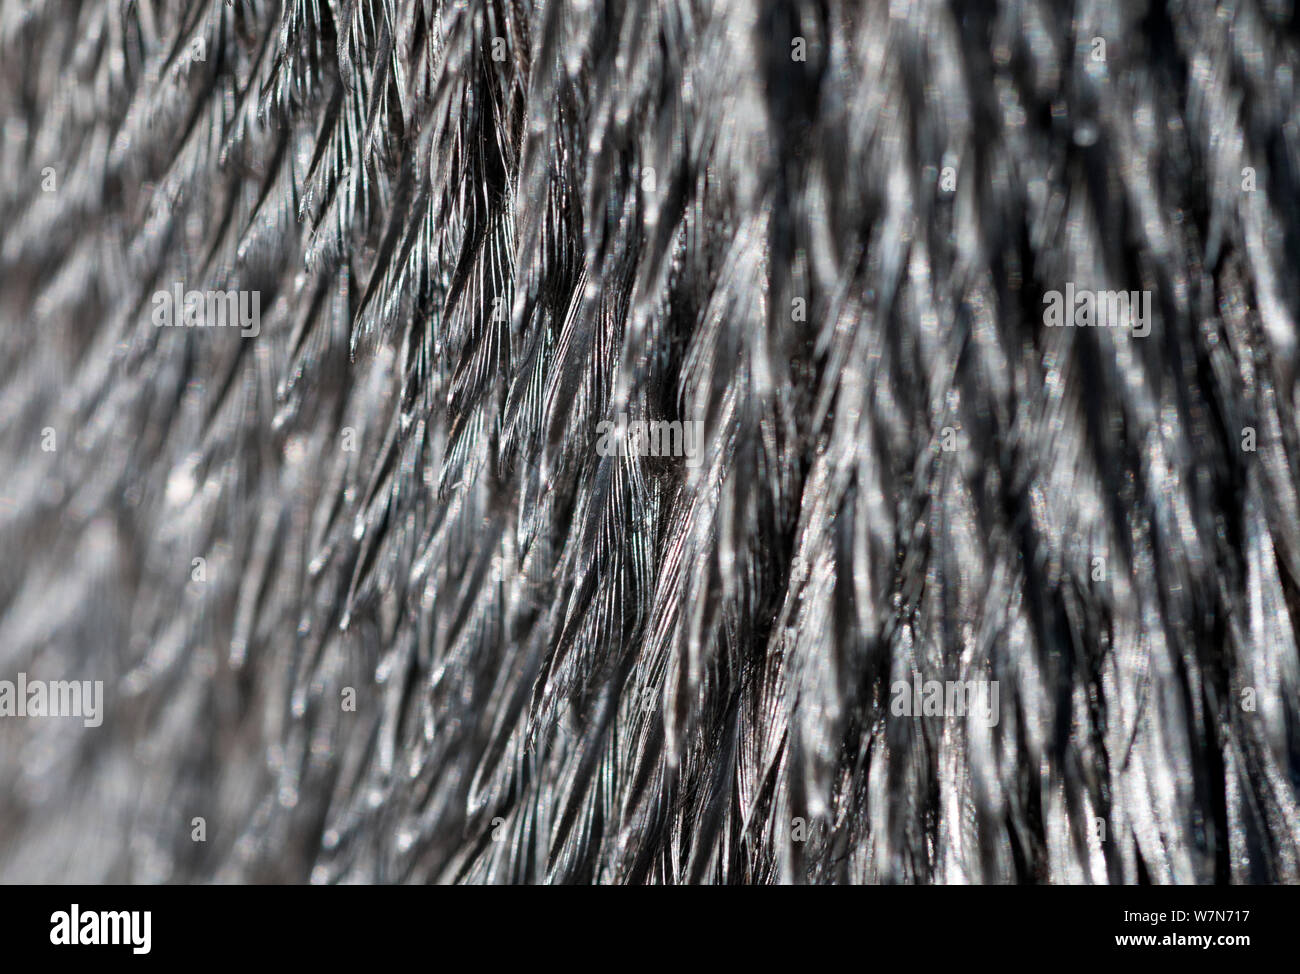 Black footed Penguin (Spheniscus demersus) in der Nähe von Öl beschichtet Federn, in der Rehabilitation an der Südafrikanischen Stiftung für die Erhaltung der Küstenvögel (SANCCOB) Kapstadt, Südafrika Stockfoto